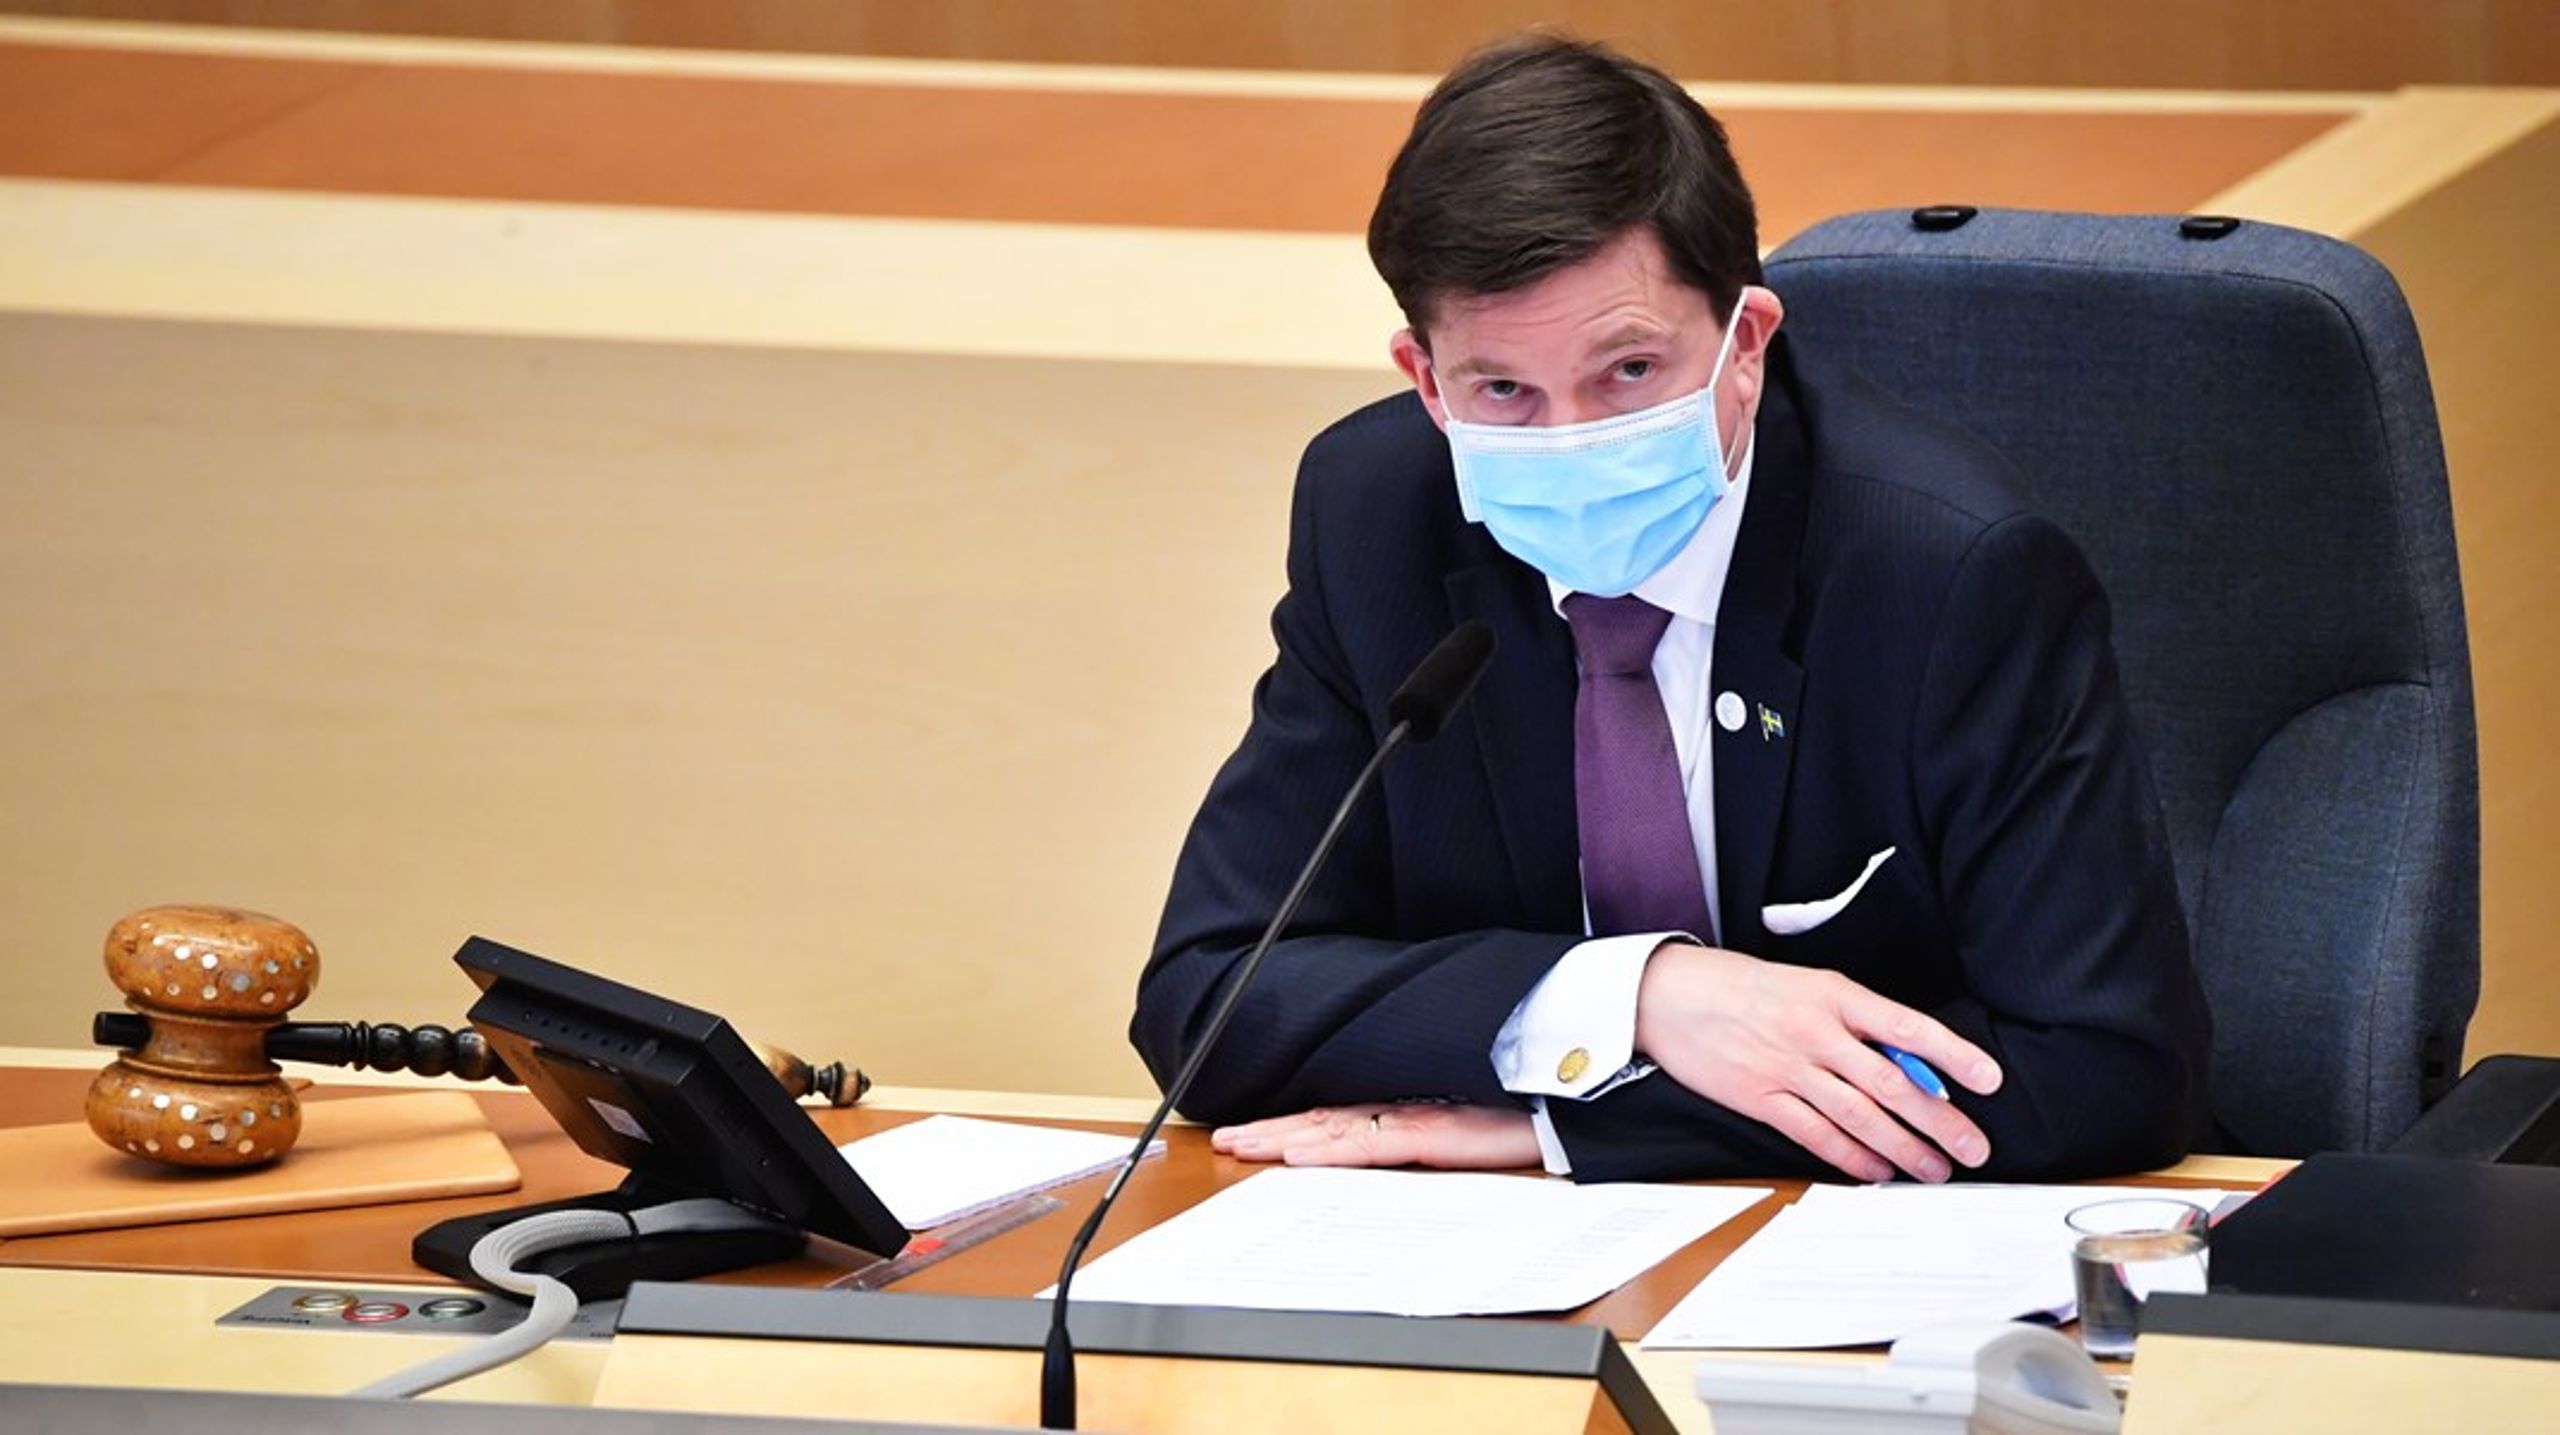 Andreas Norlén får ta av sig munskyddet av "praktiska skäl".